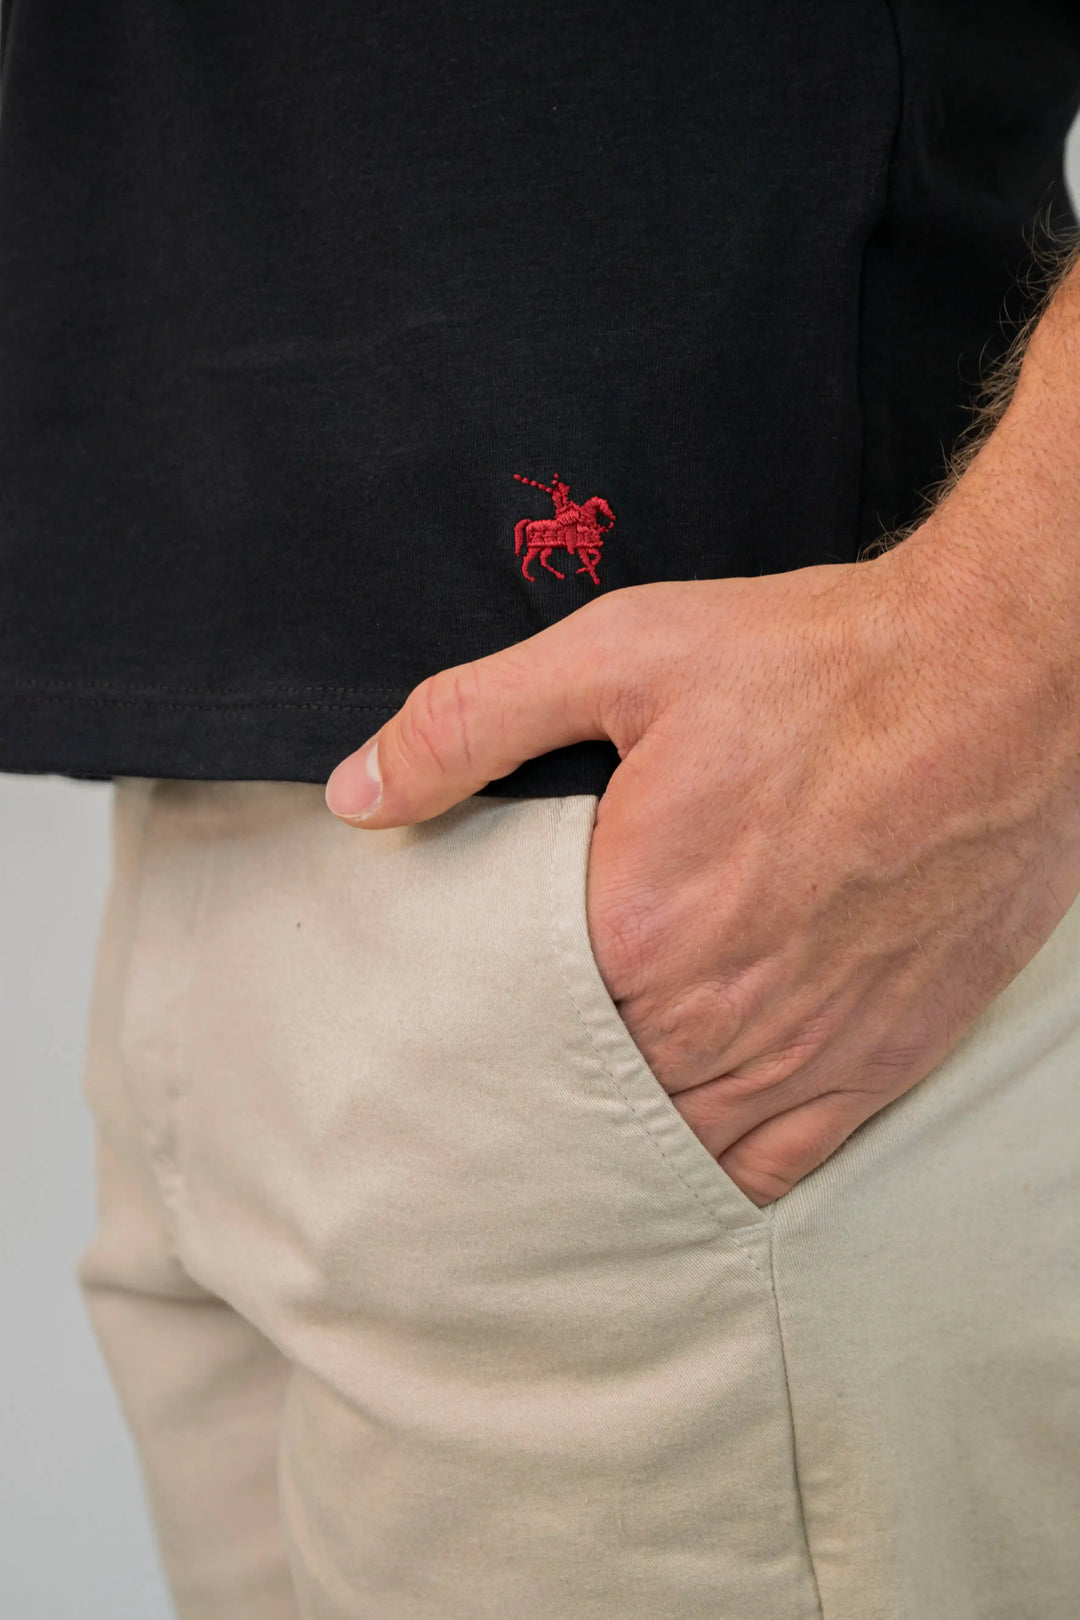 Detalle del logo de la marca Armatura bordado en la parte inferior de la camiseta